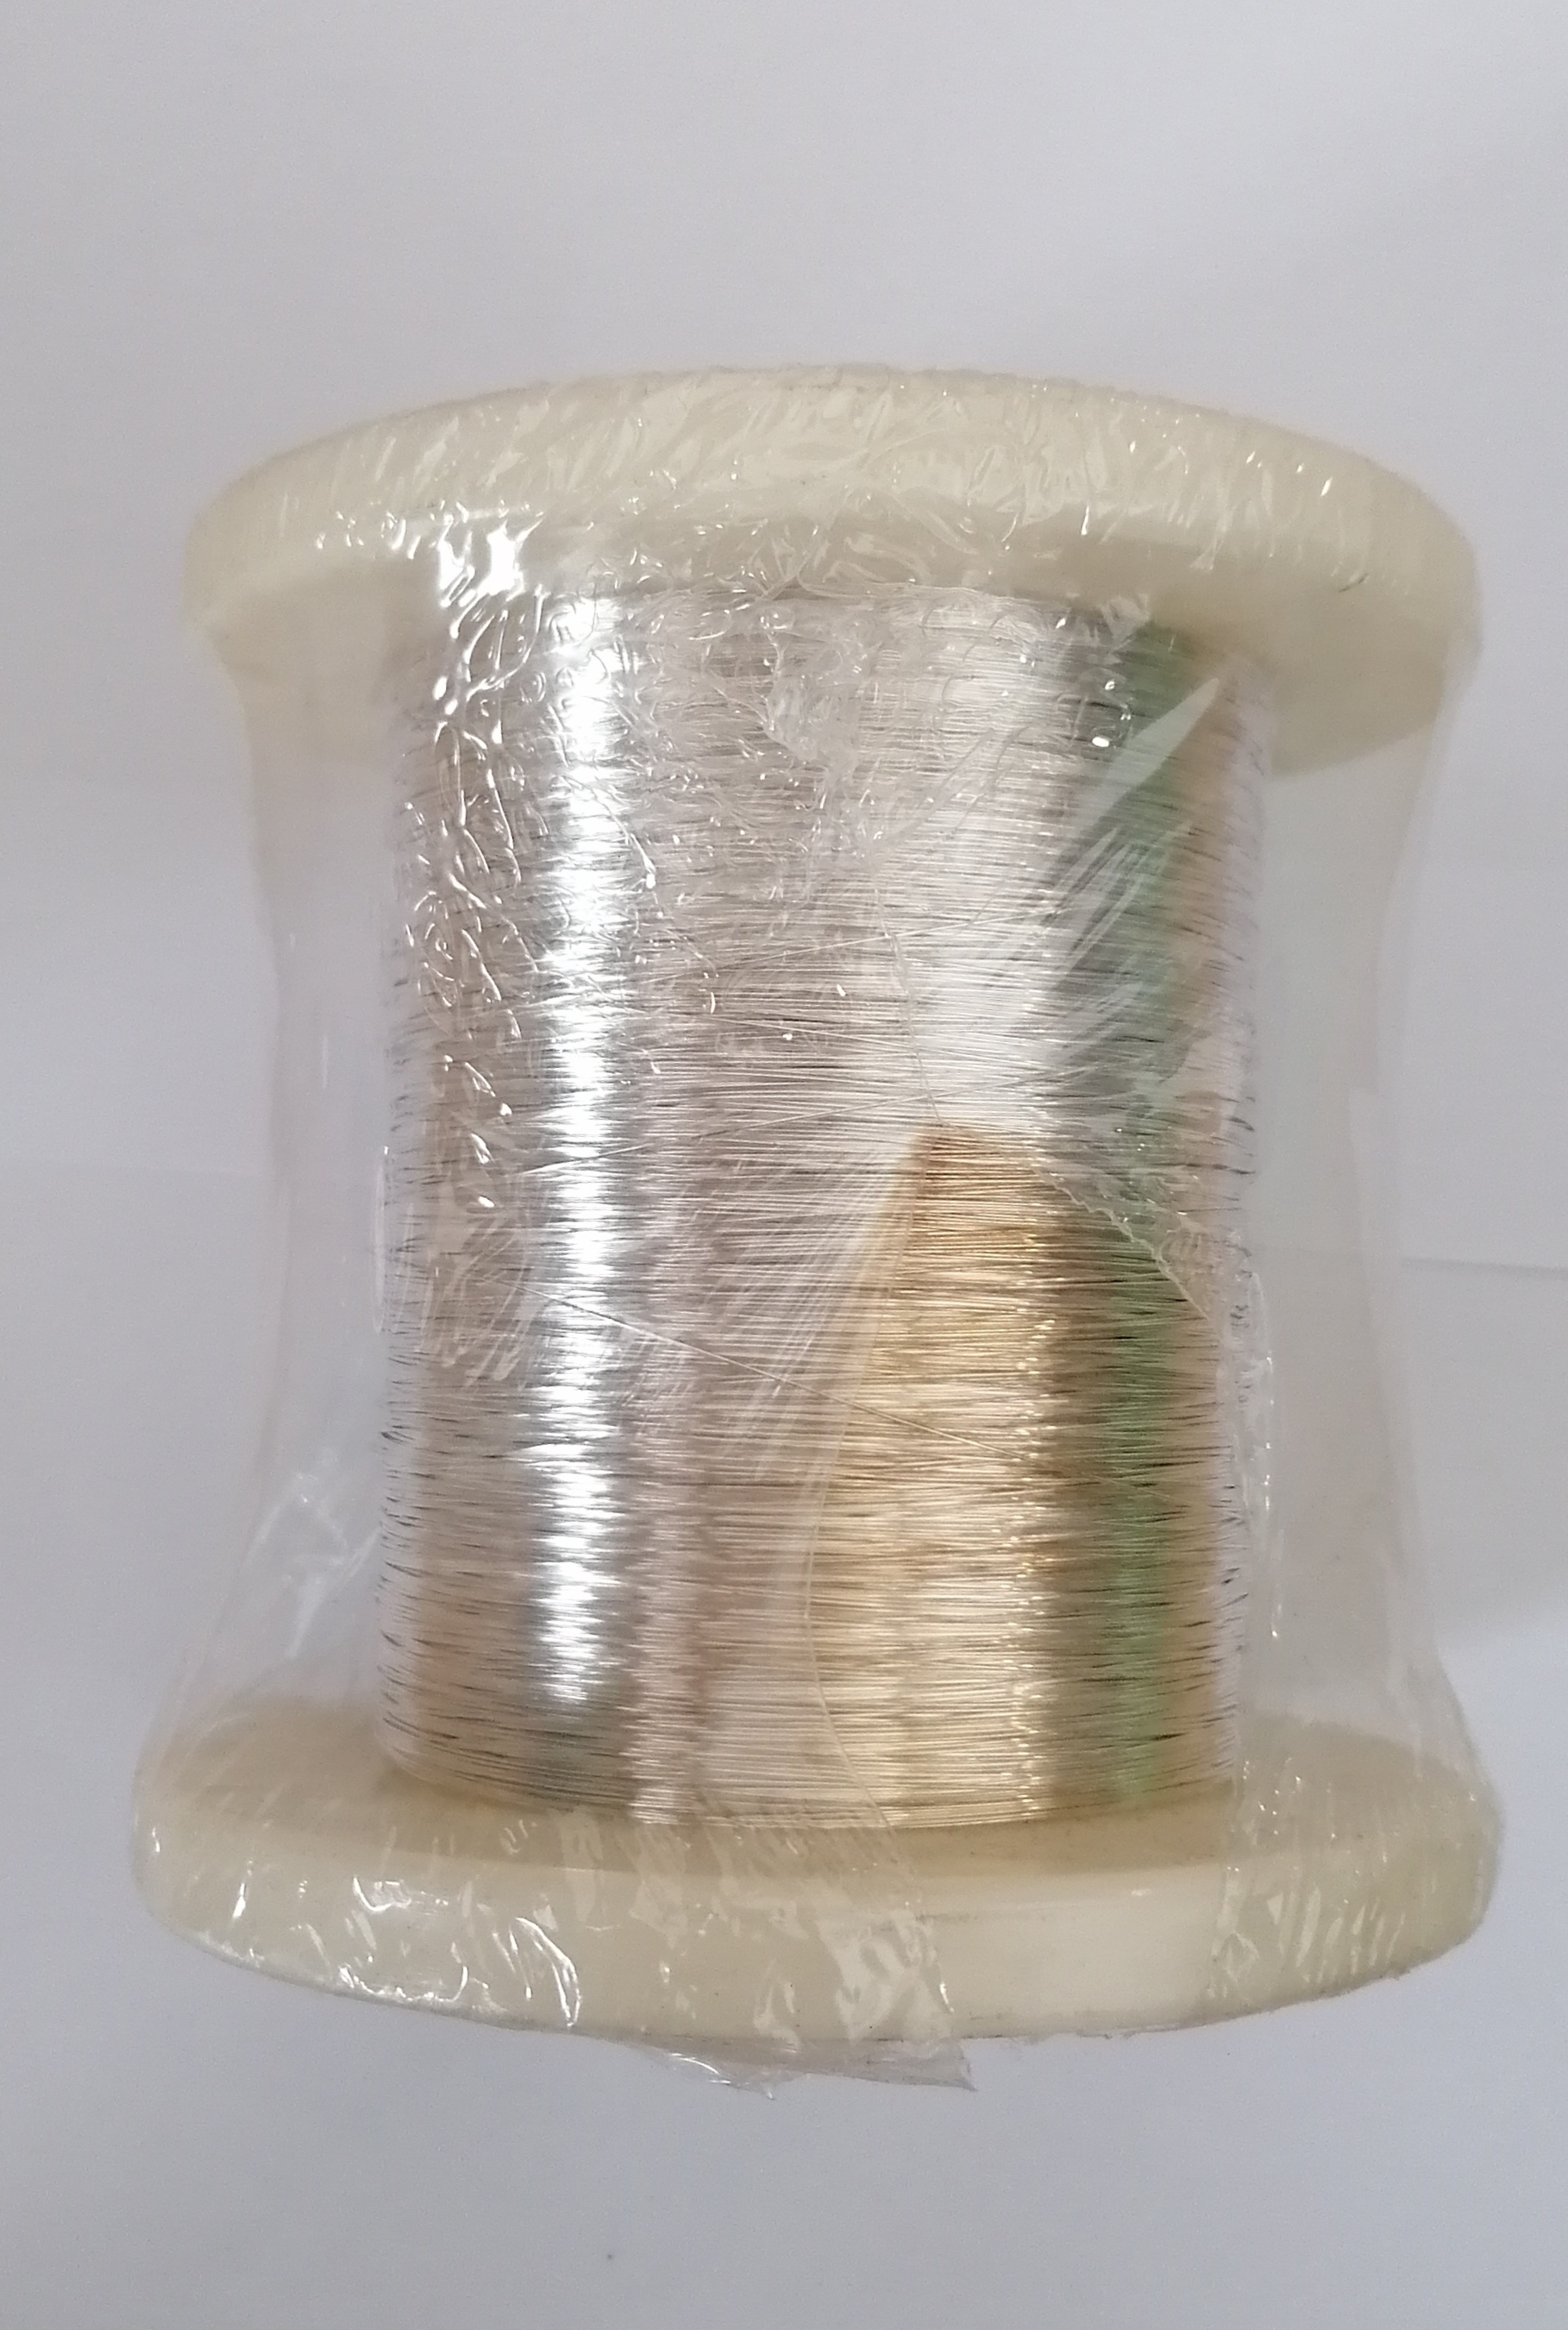 Postriebrený medený drôt (1kg; 0,4mm) - 2. trieda